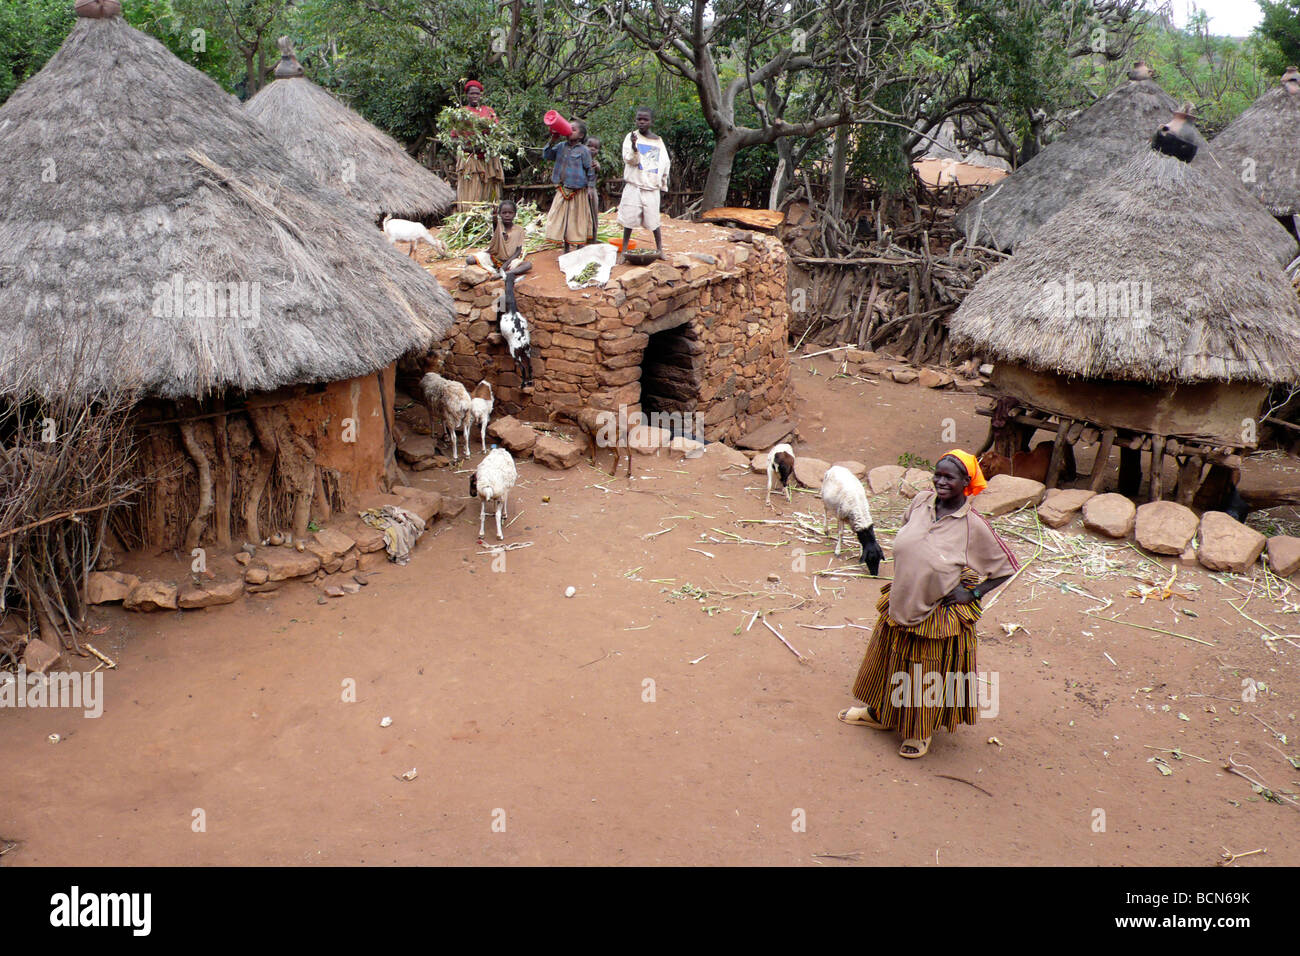 ethiopia omo valley konso people Stock Photo